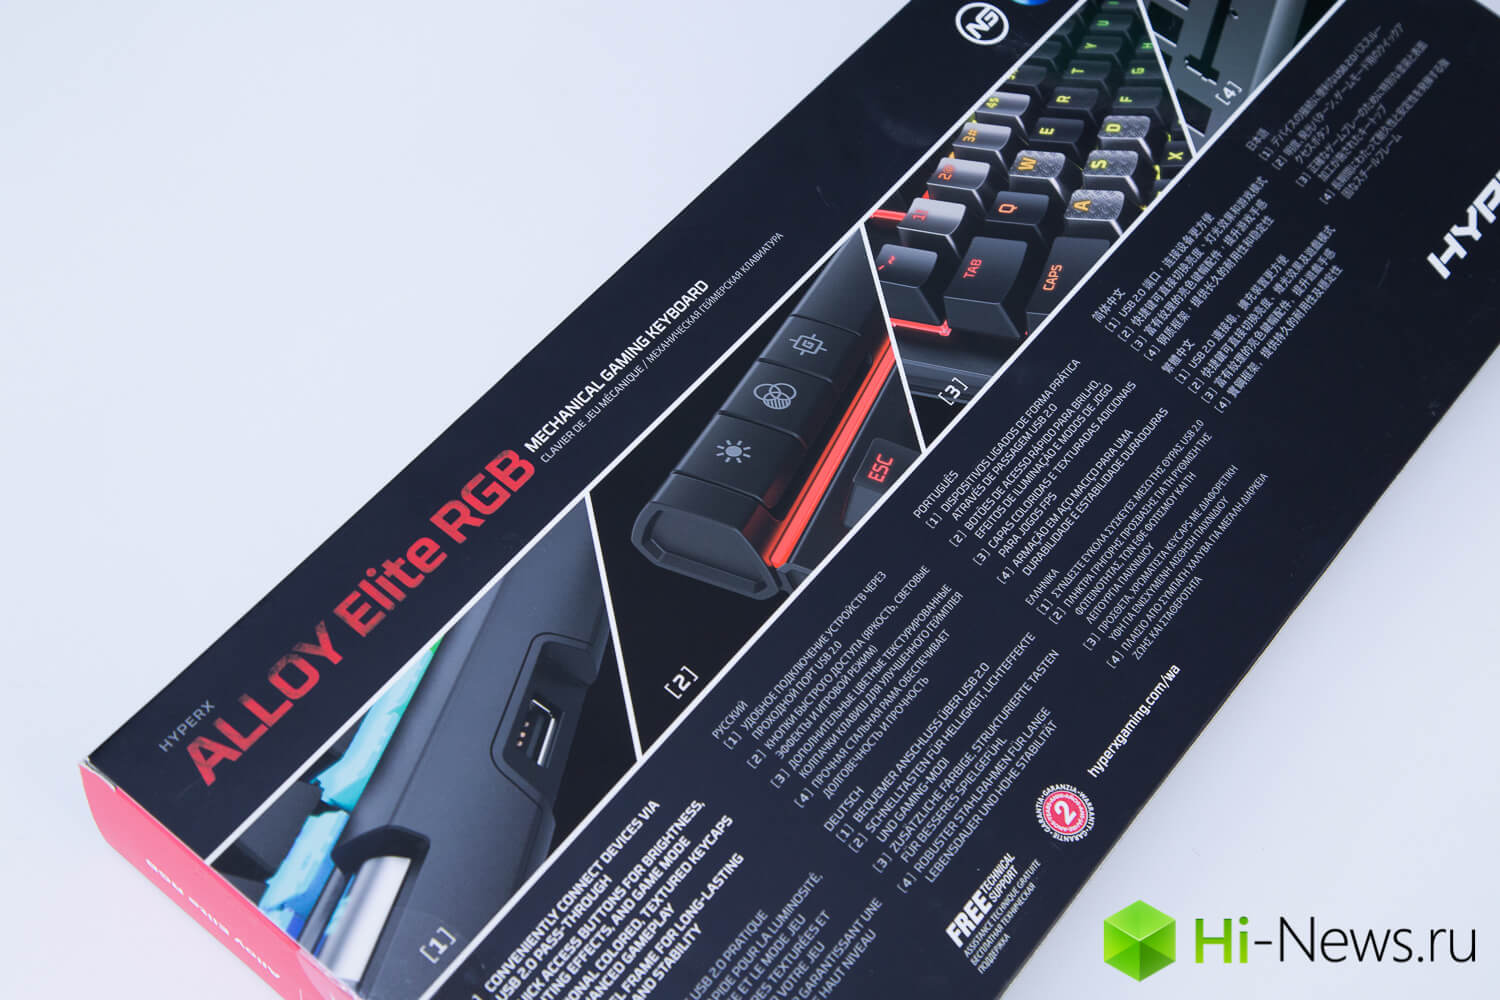 Игровая дискотека: обзор клавиатуры HyperX Alloy Elite RGB